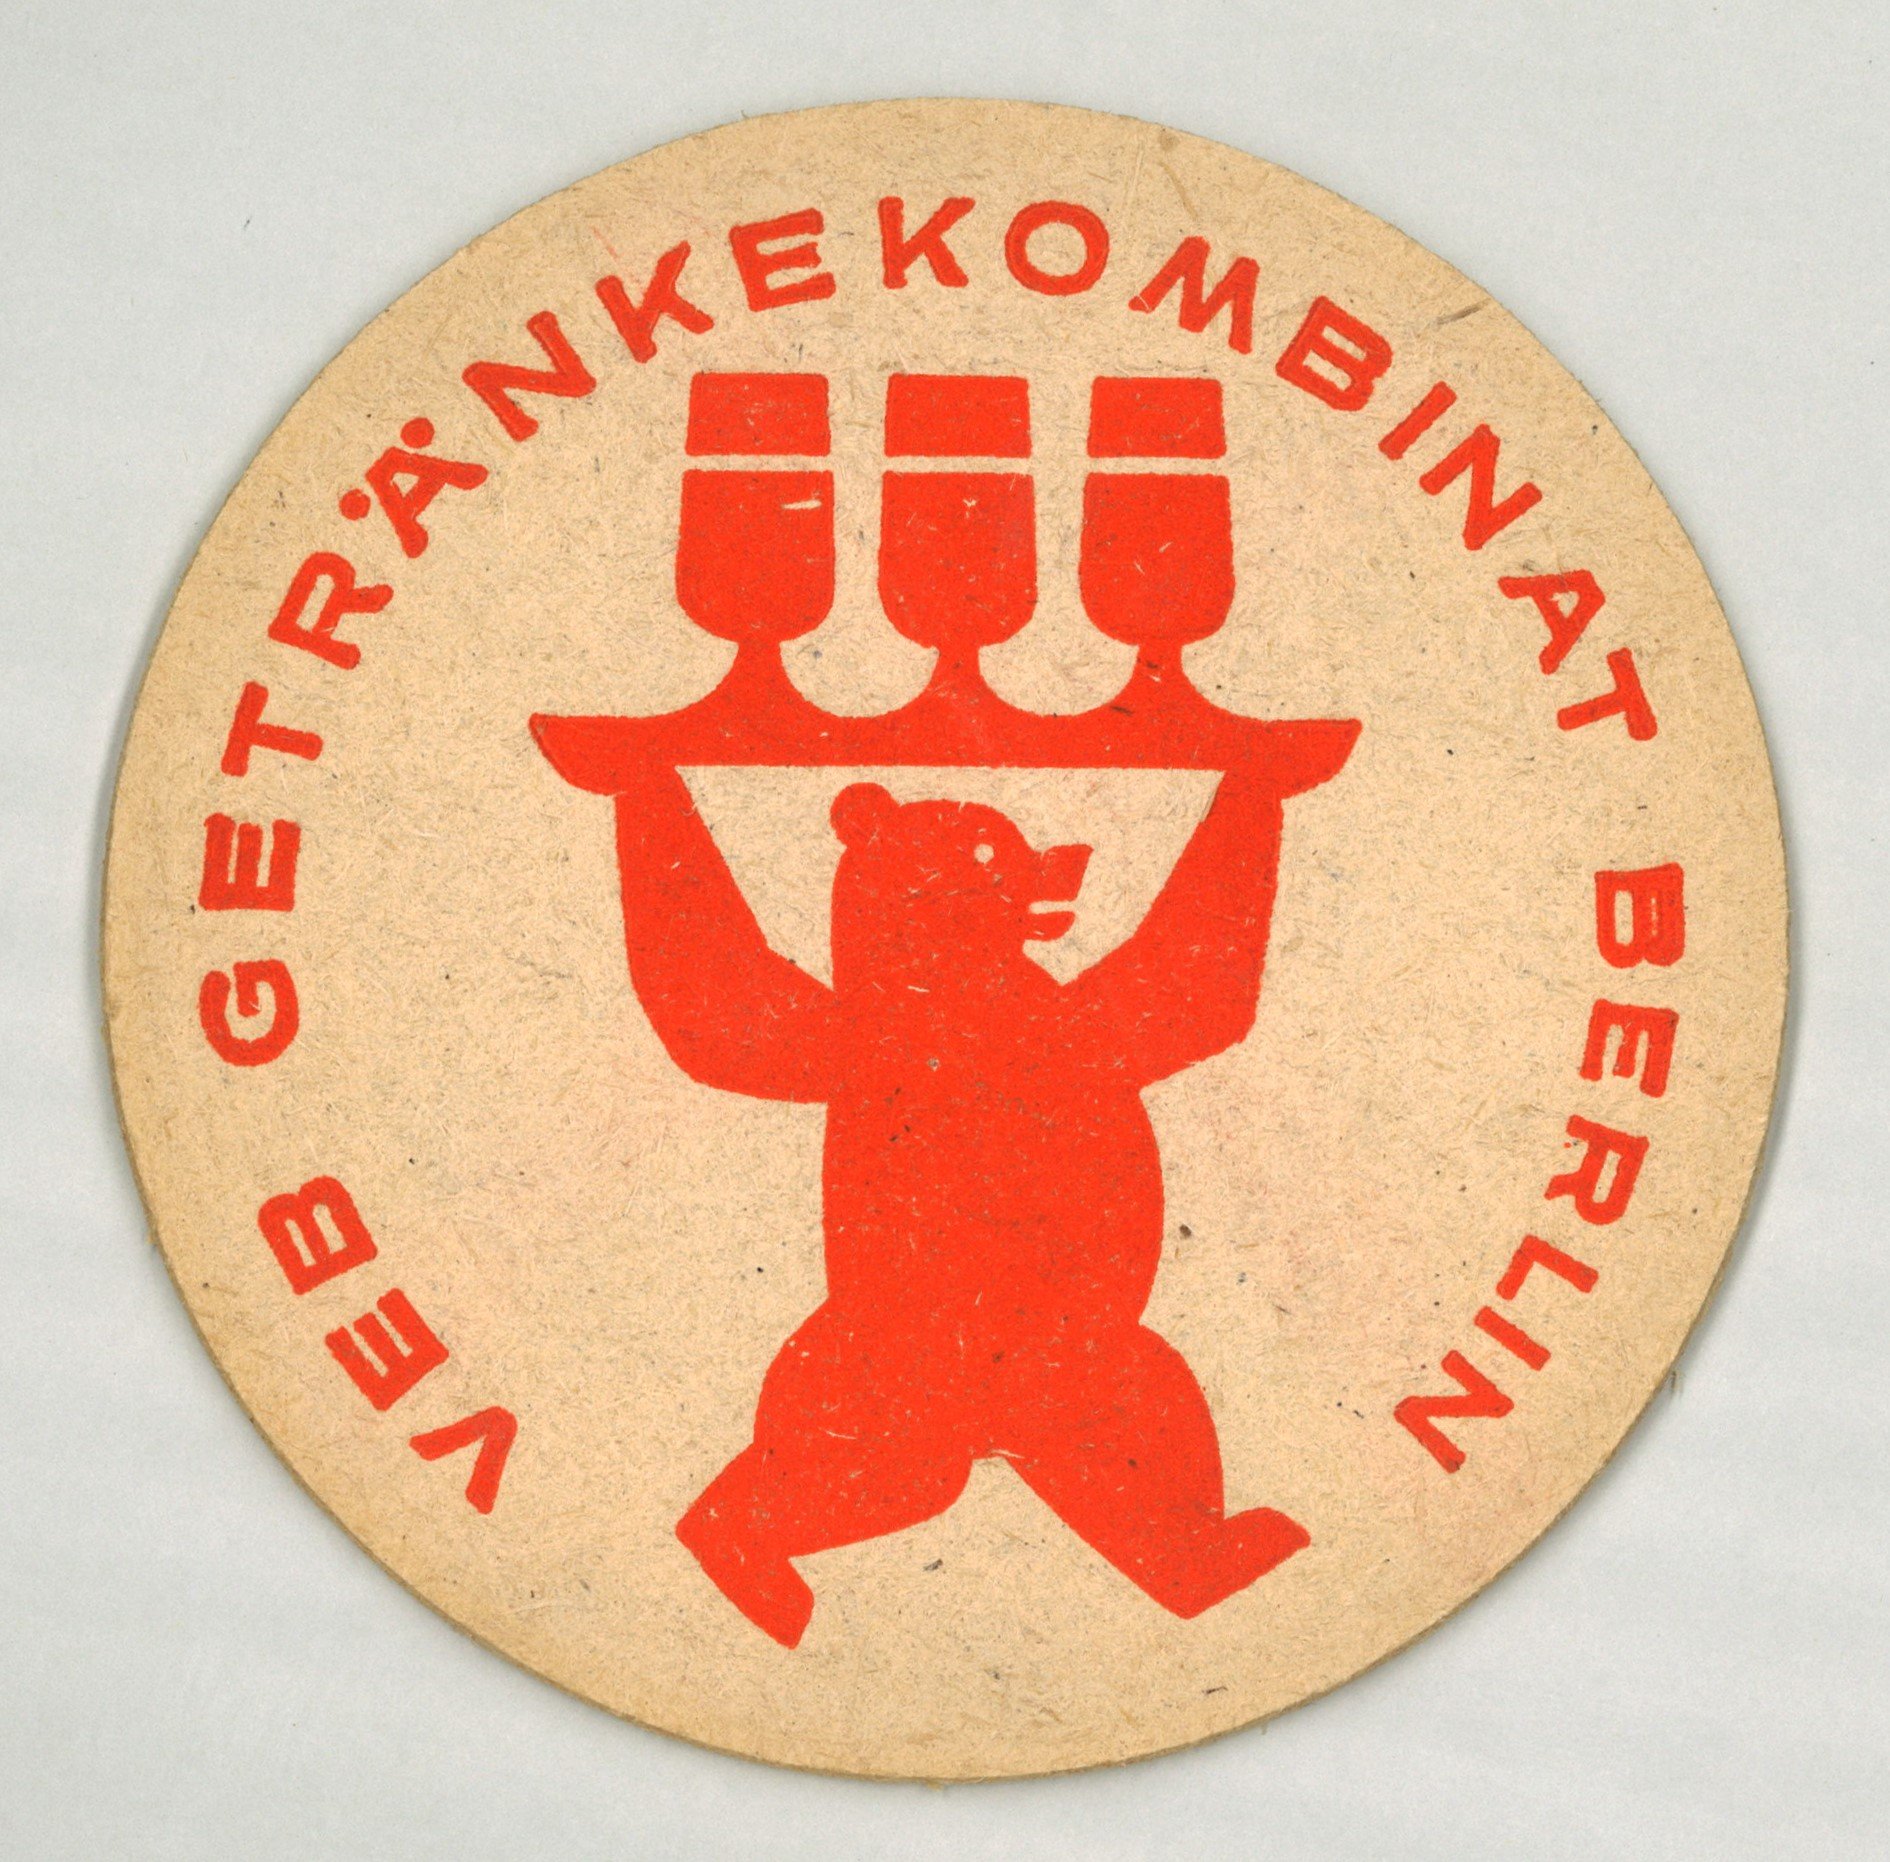 Berlin: VEB Getränkekombinat Berlin (Landesgeschichtliche Vereinigung für die Mark Brandenburg e.V., Archiv CC BY)